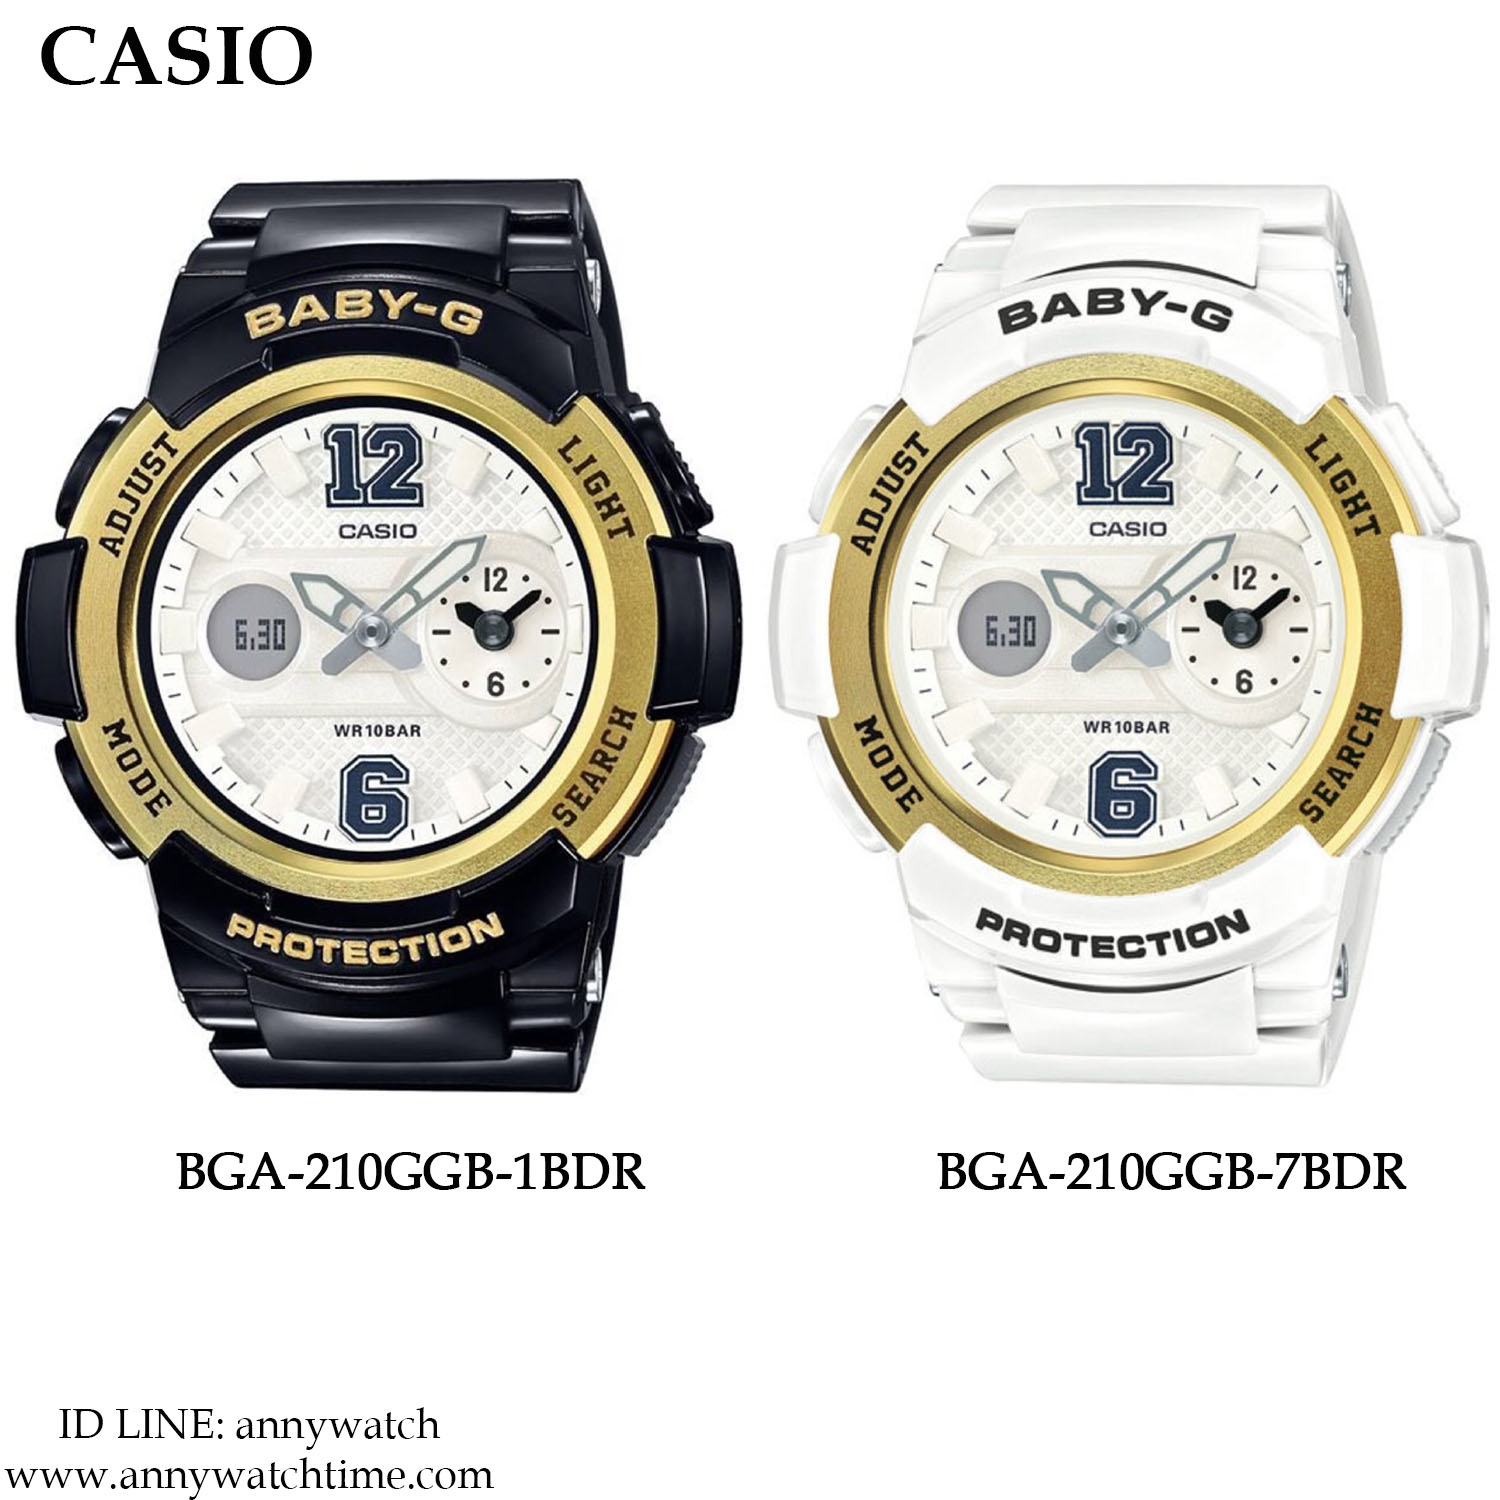 Khám phá đồng hồ Casio BGA-210GGB-7BDR